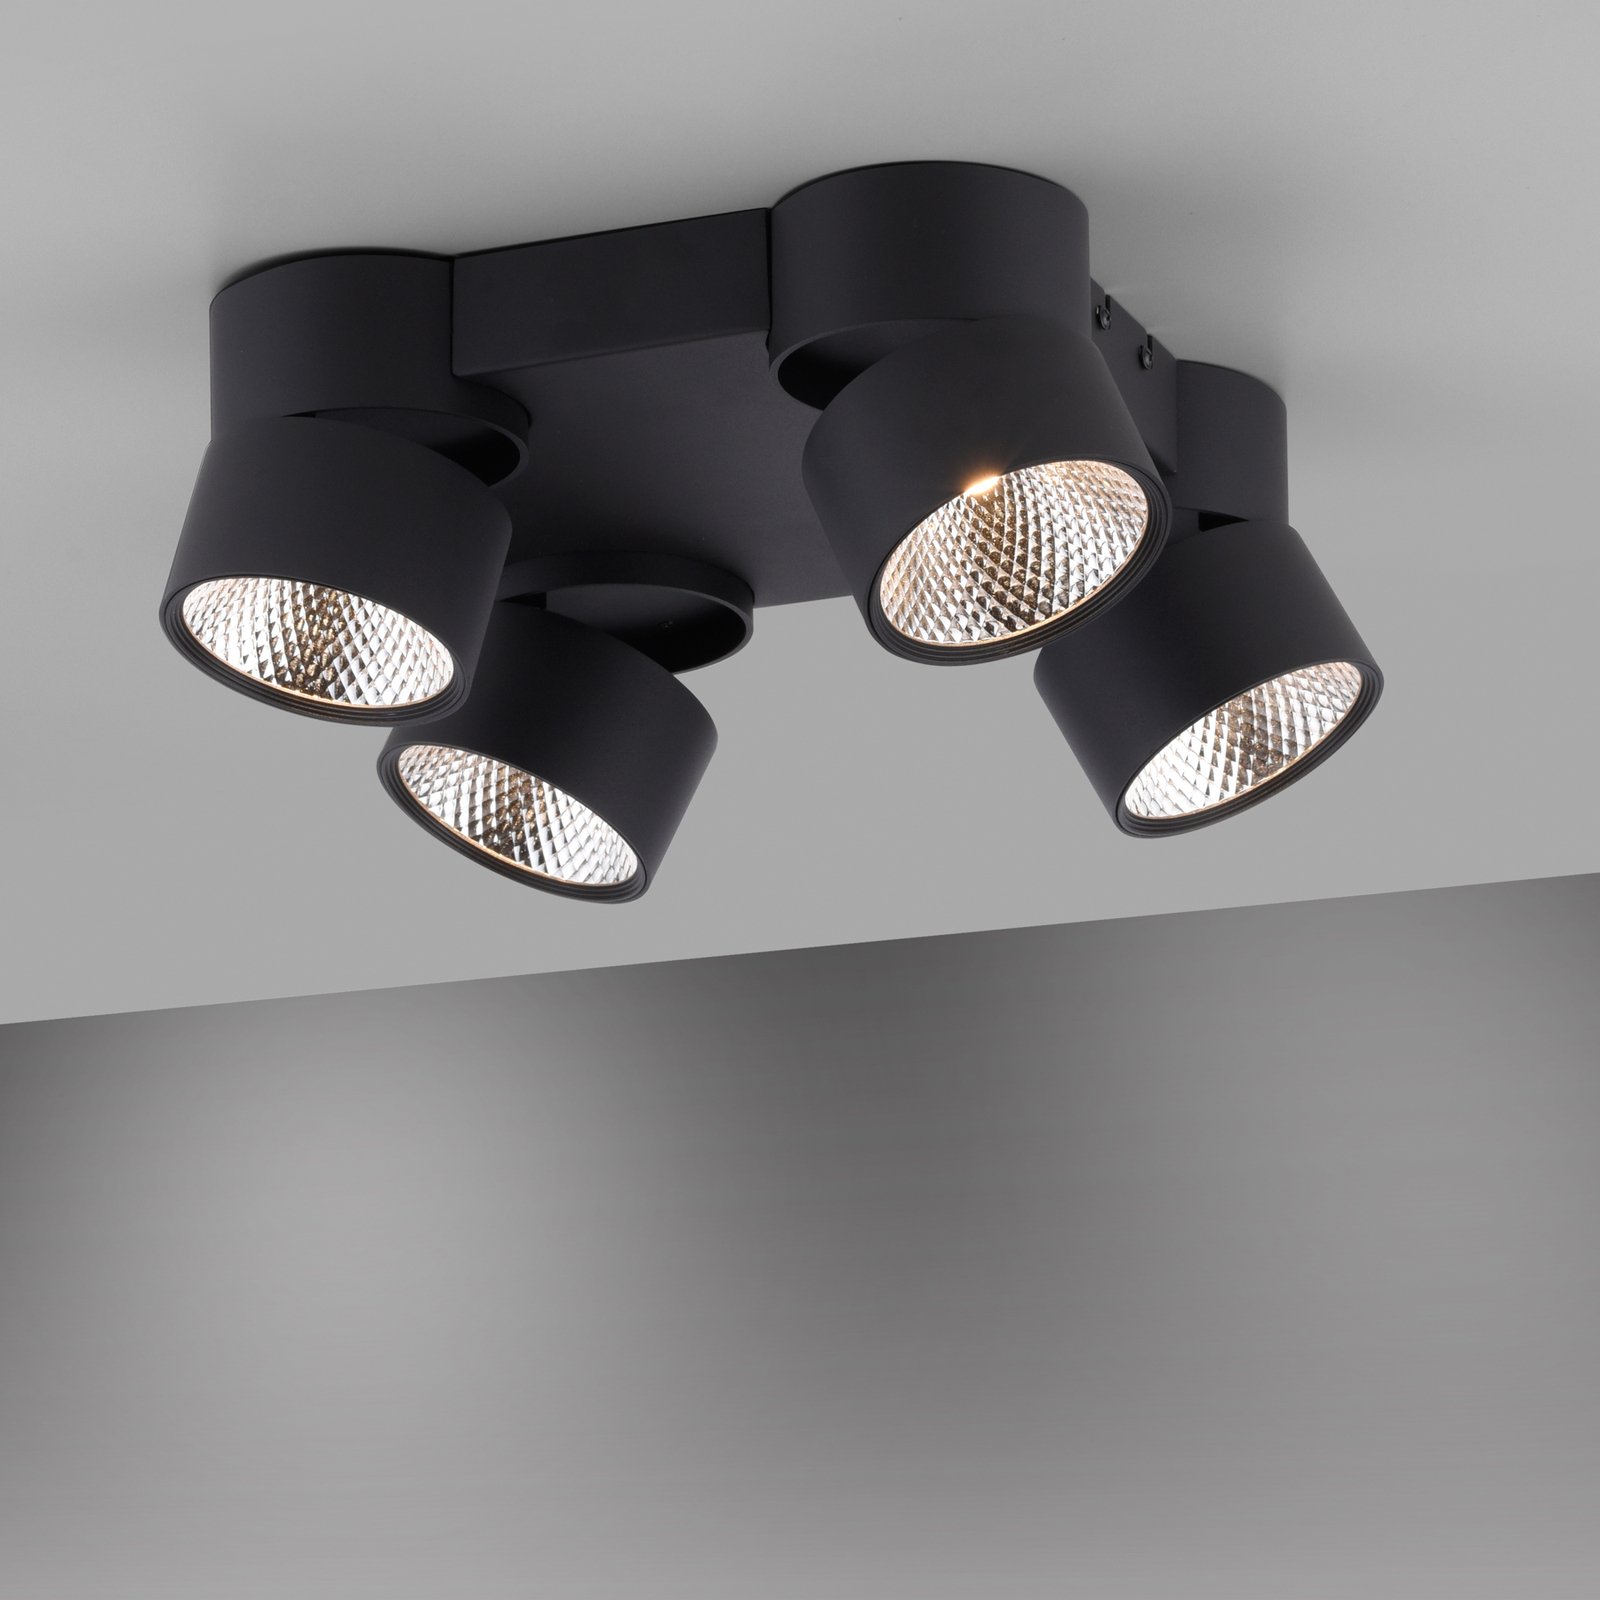 Pure Nola LED plafondlamp 4-lamps zwart